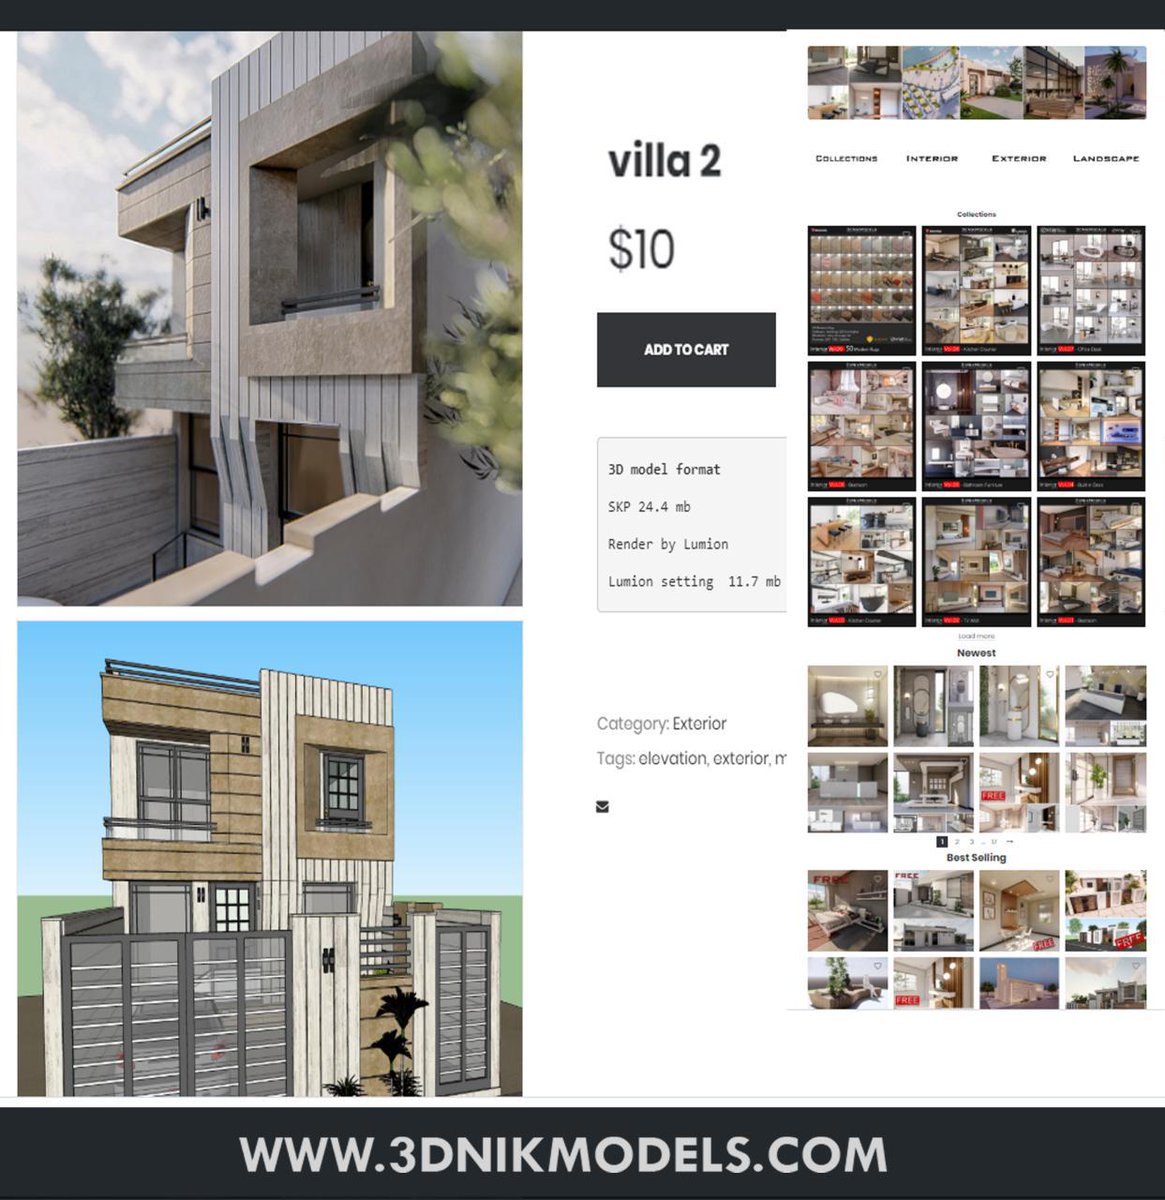 sketchup / lumion - 3dnikmodels.com/exterior/ #sketchup #lumion #rendering #render #modeling #3DModel #3dmodeling #3DS #architecture #arquitectura #interior #interiordesign #exteriordesign